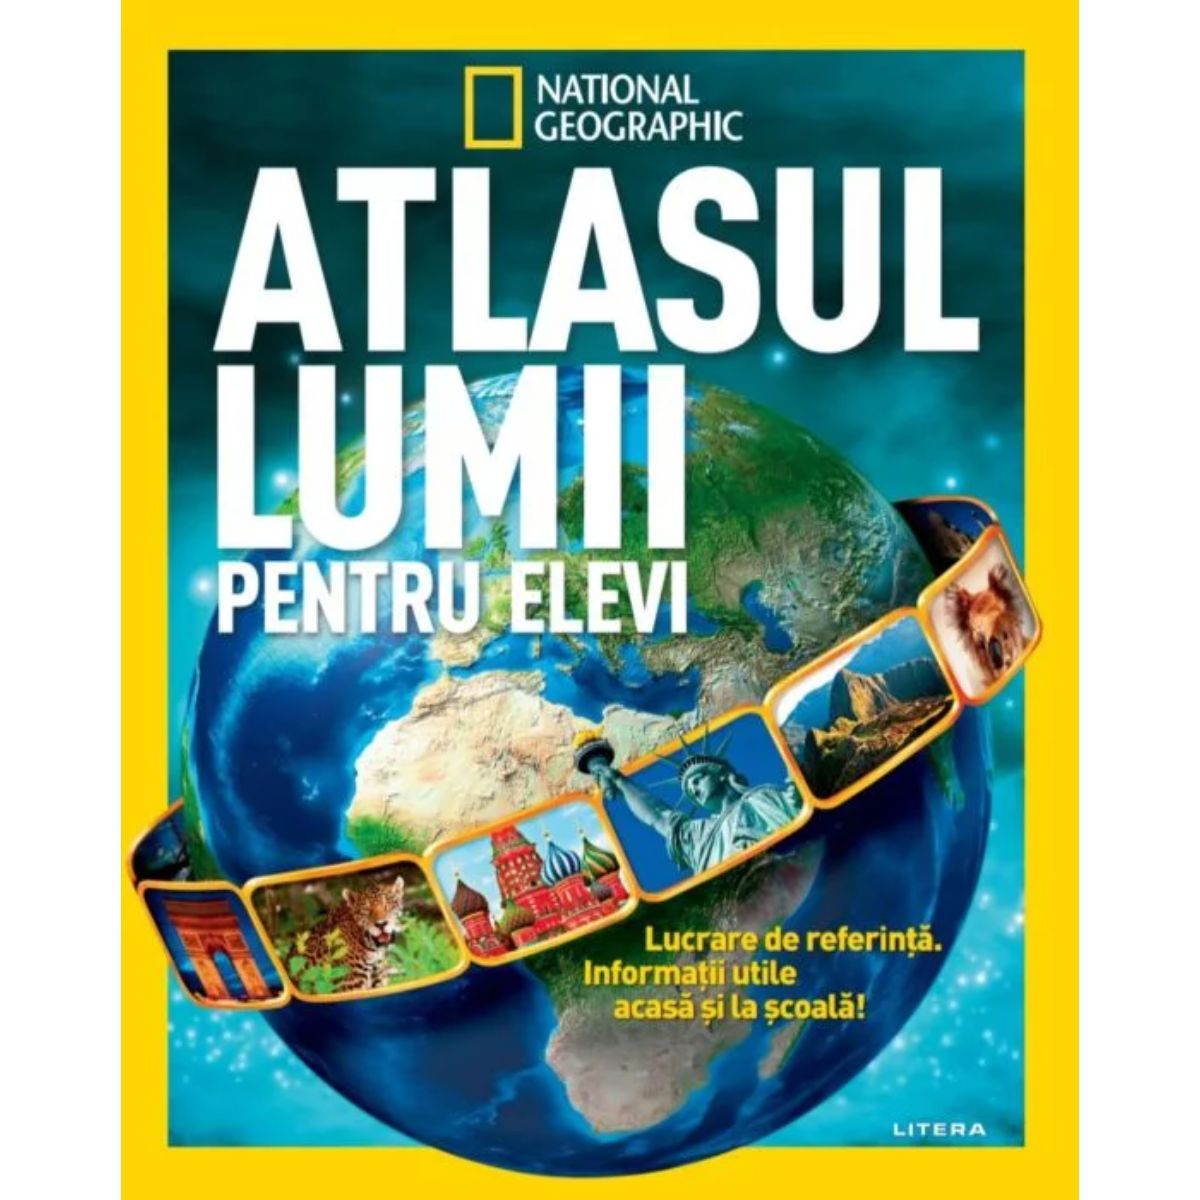 Atlasul lumii pentru elevi, National Geographic